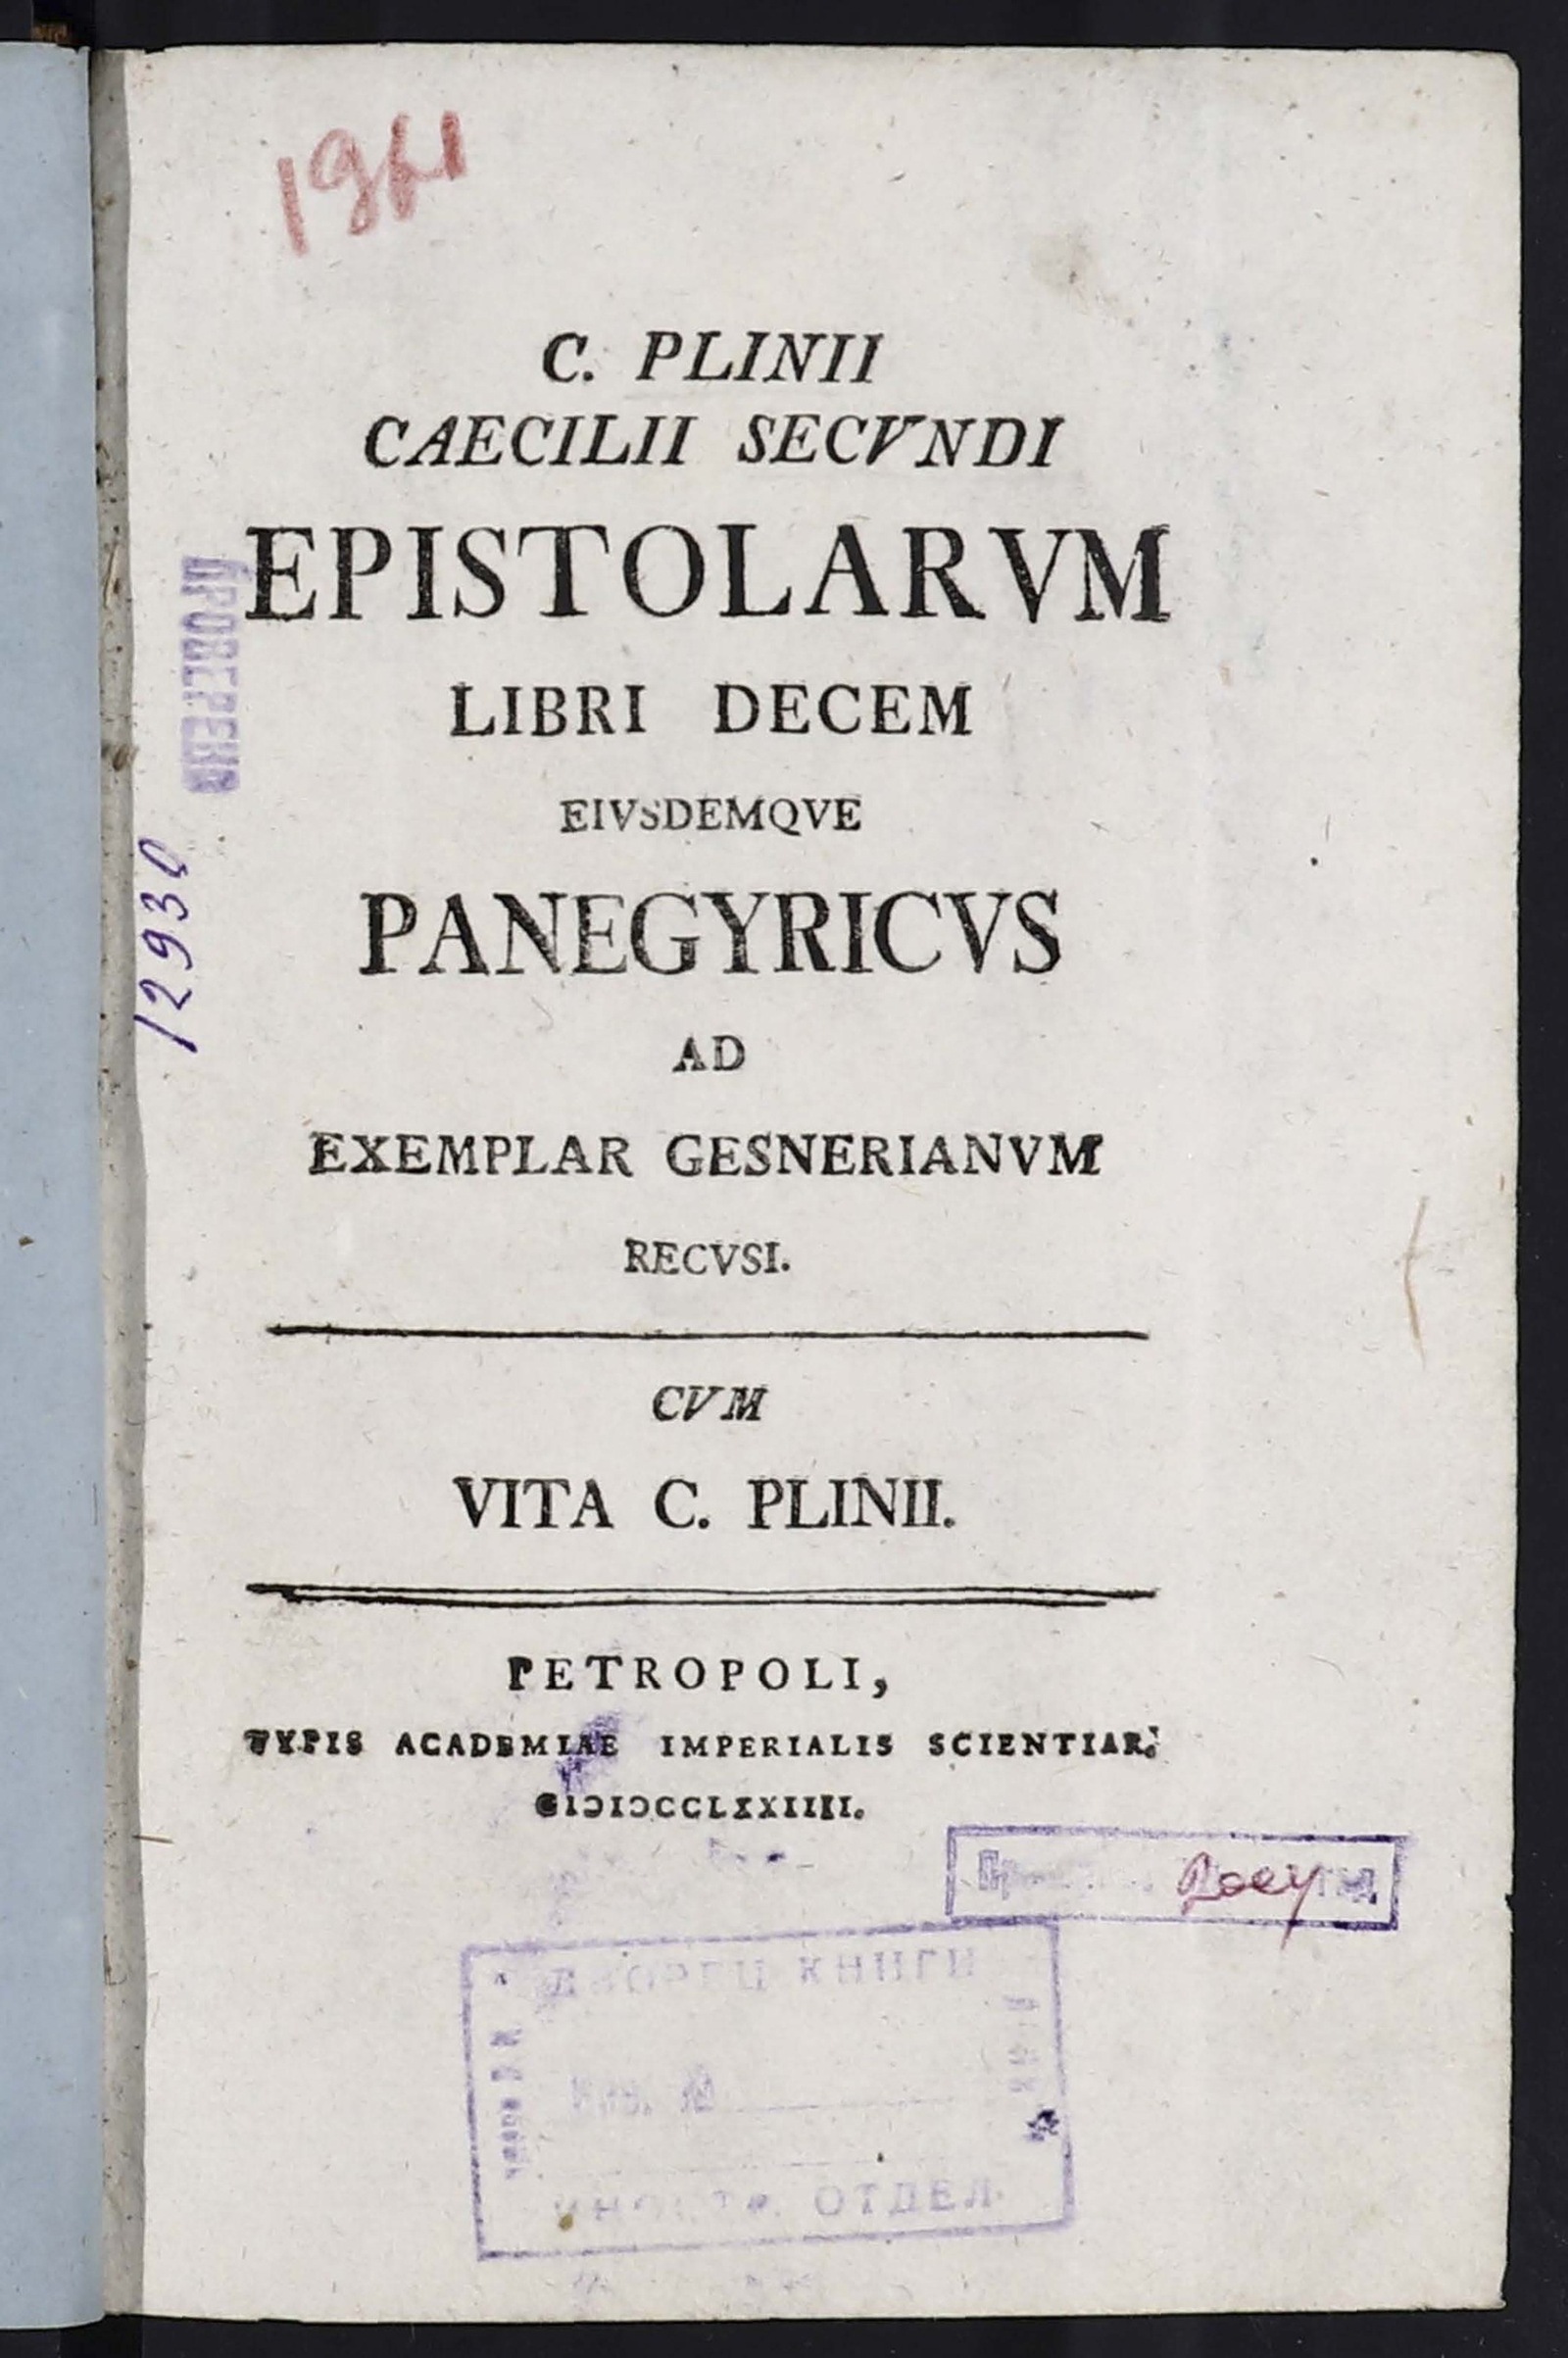 Изображение книги C. Plinii Caecilii Secundi Epistolarum libri decem eiusdemque panegyricus ad exemplar Gesnerianum recusi